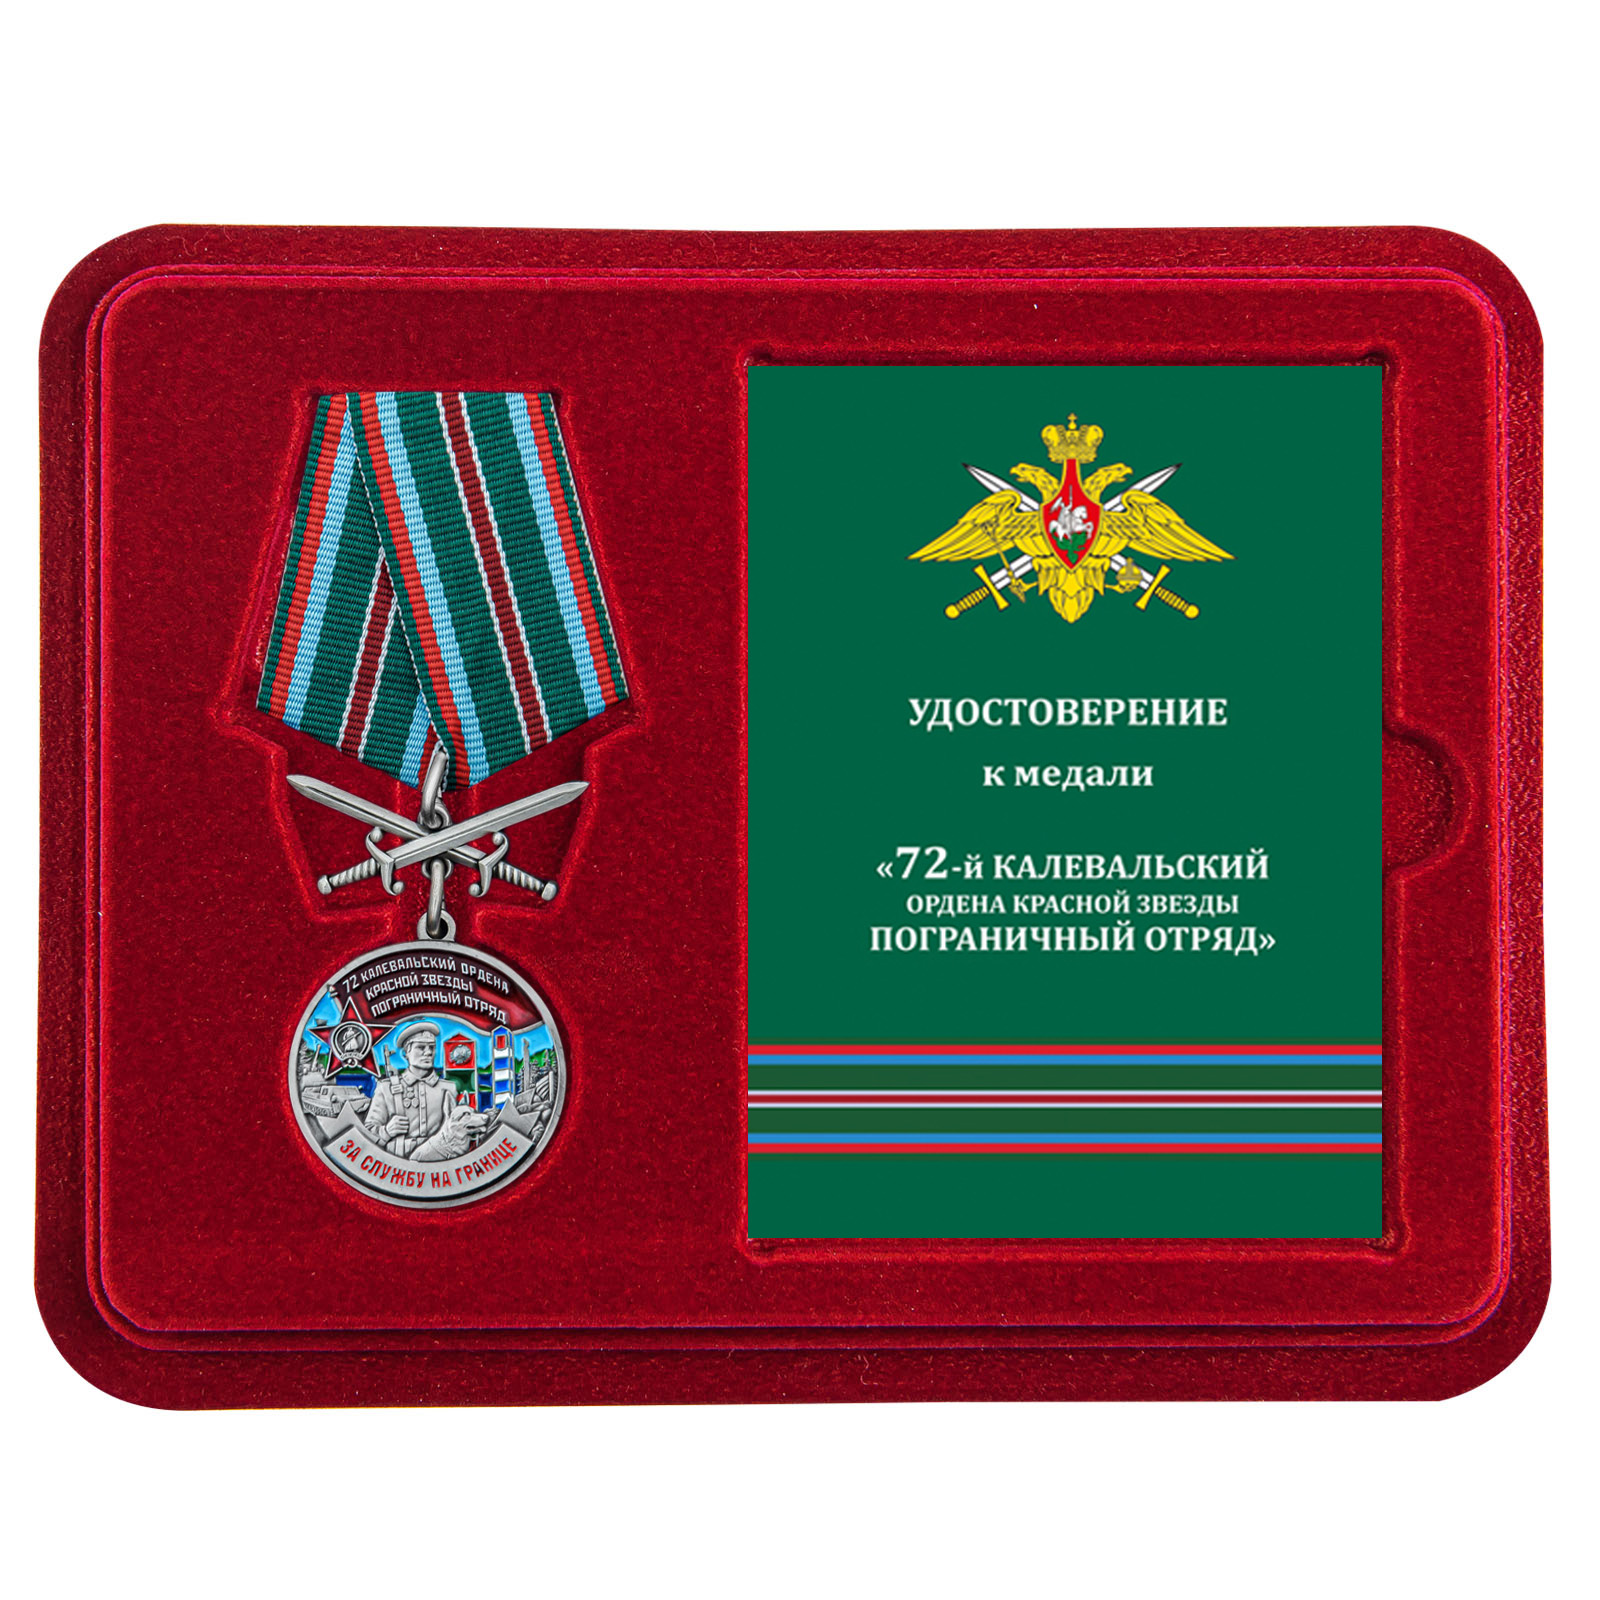 Купить медаль За службу в Калевальском пограничном отряде выгодно